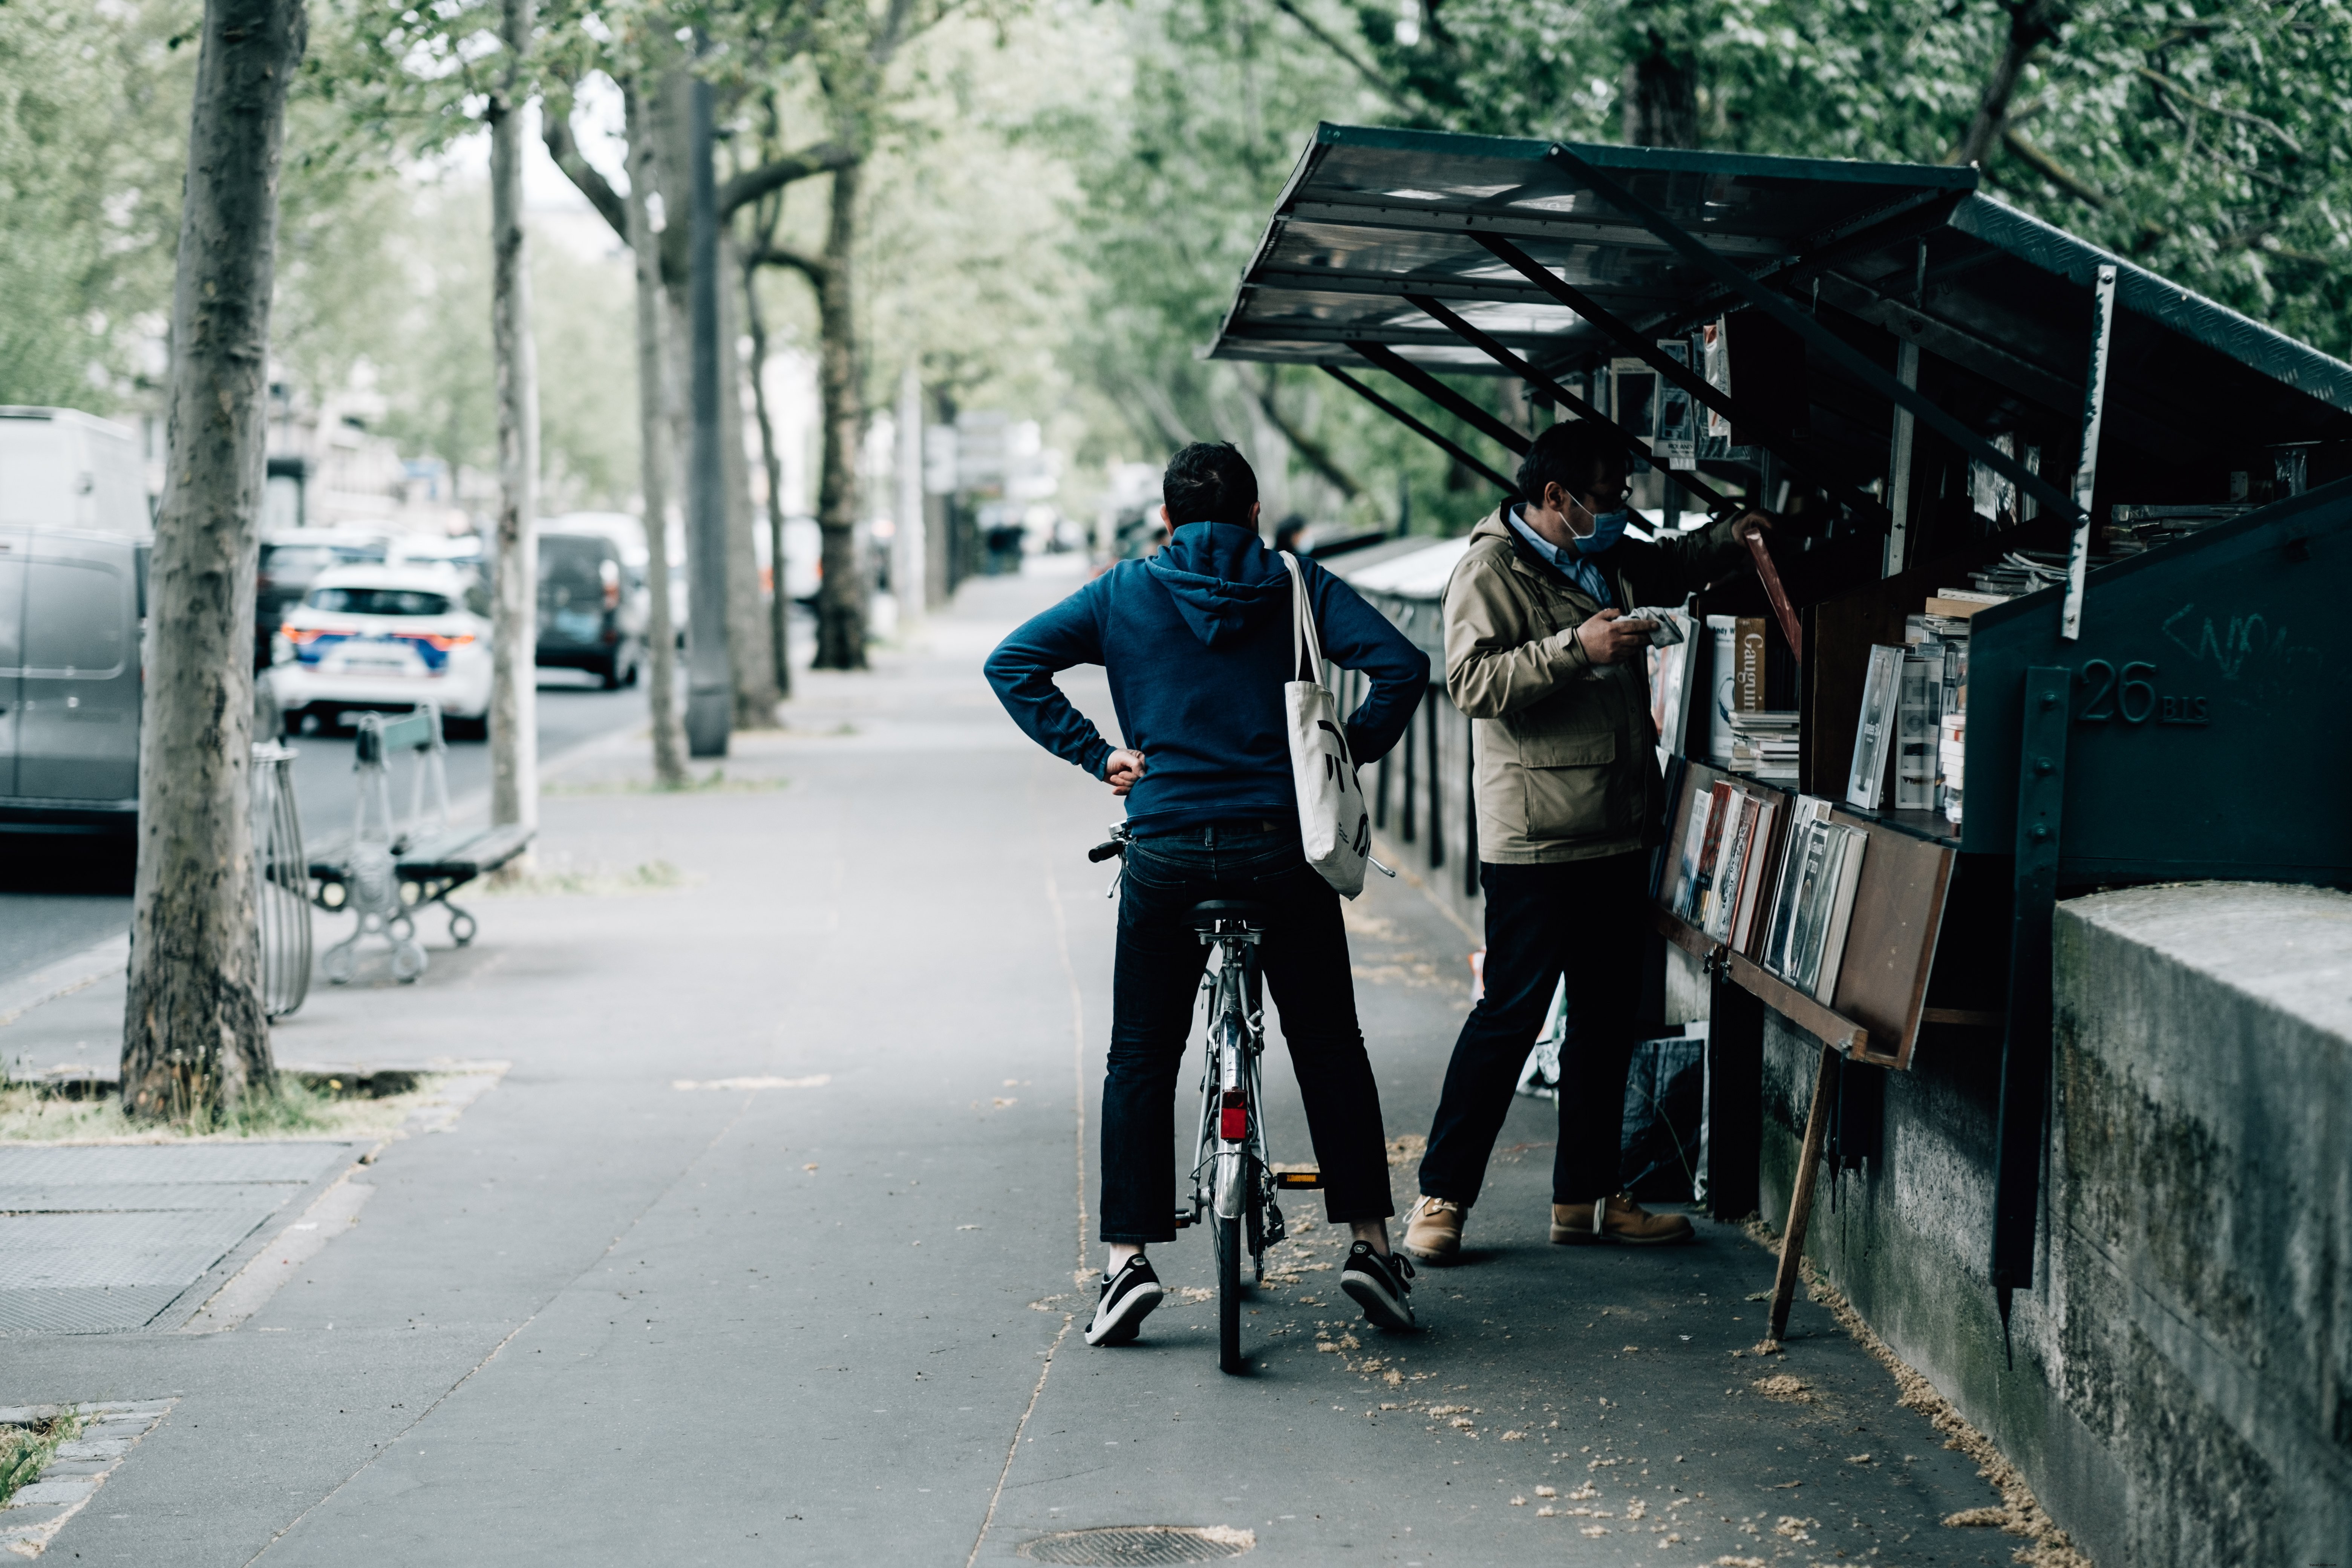 Pessoa em uma bicicleta espera seu amigo comprar fotos de livros 